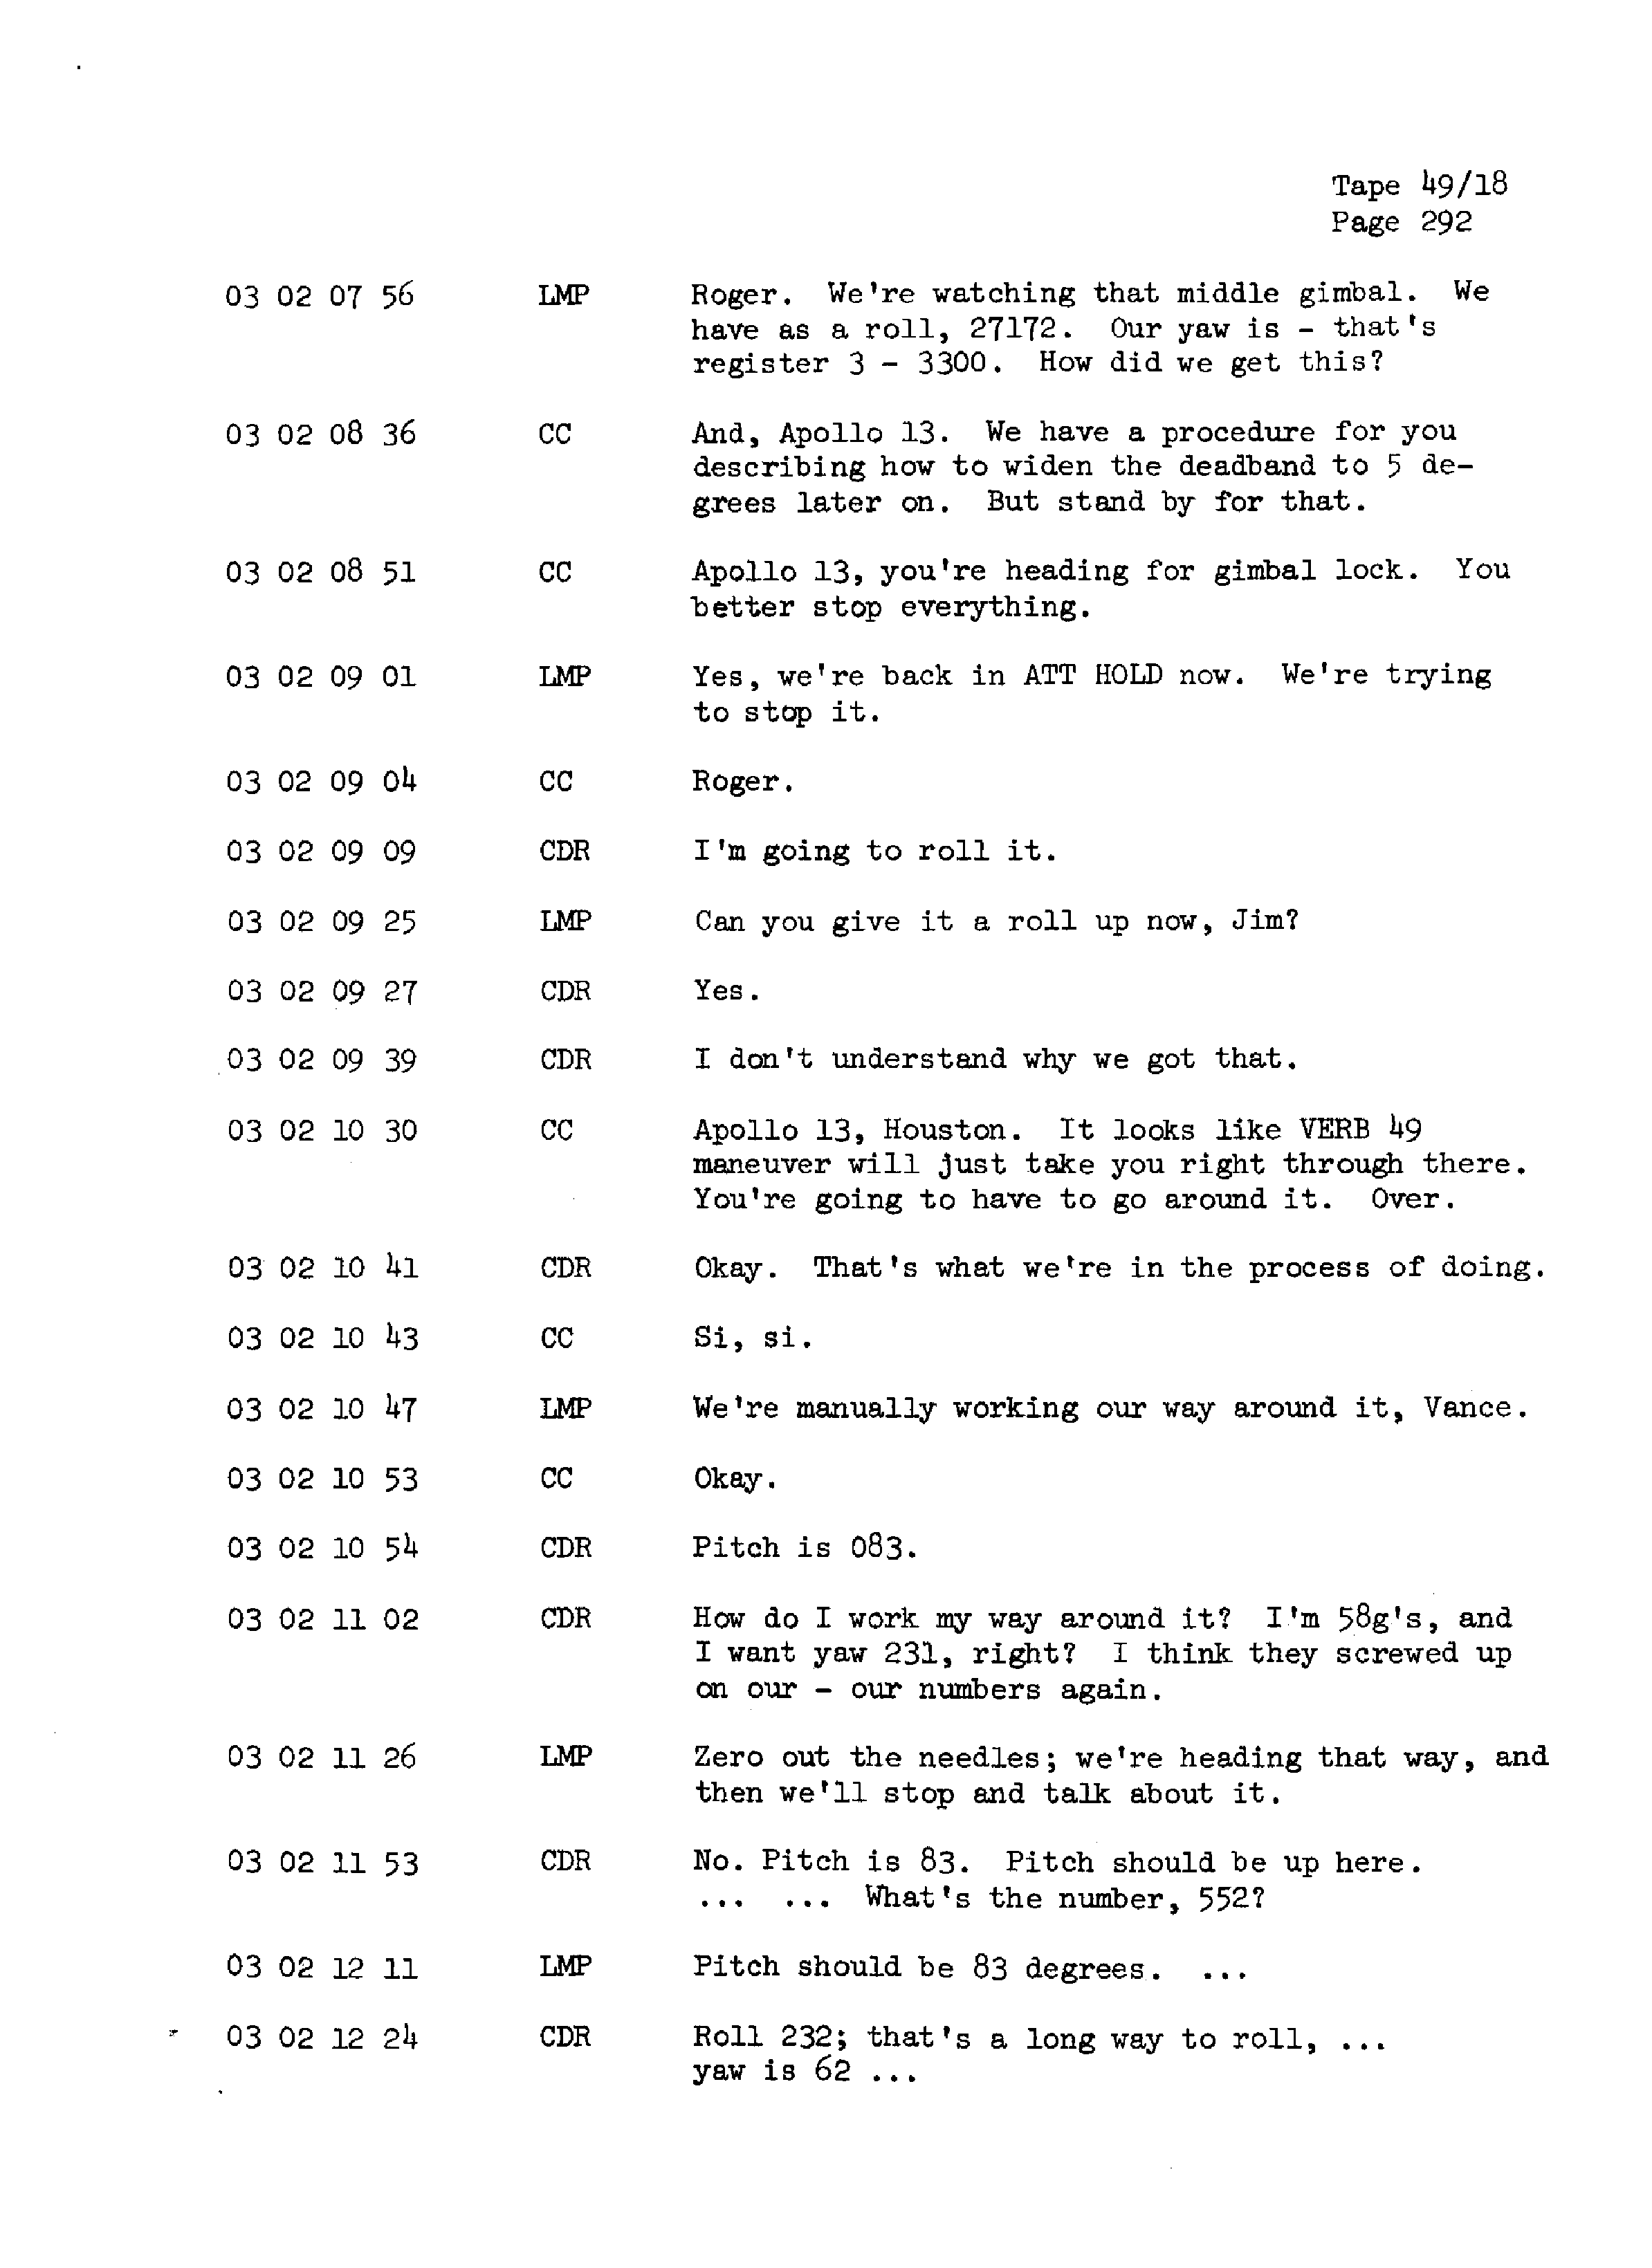 Page 299 of Apollo 13’s original transcript